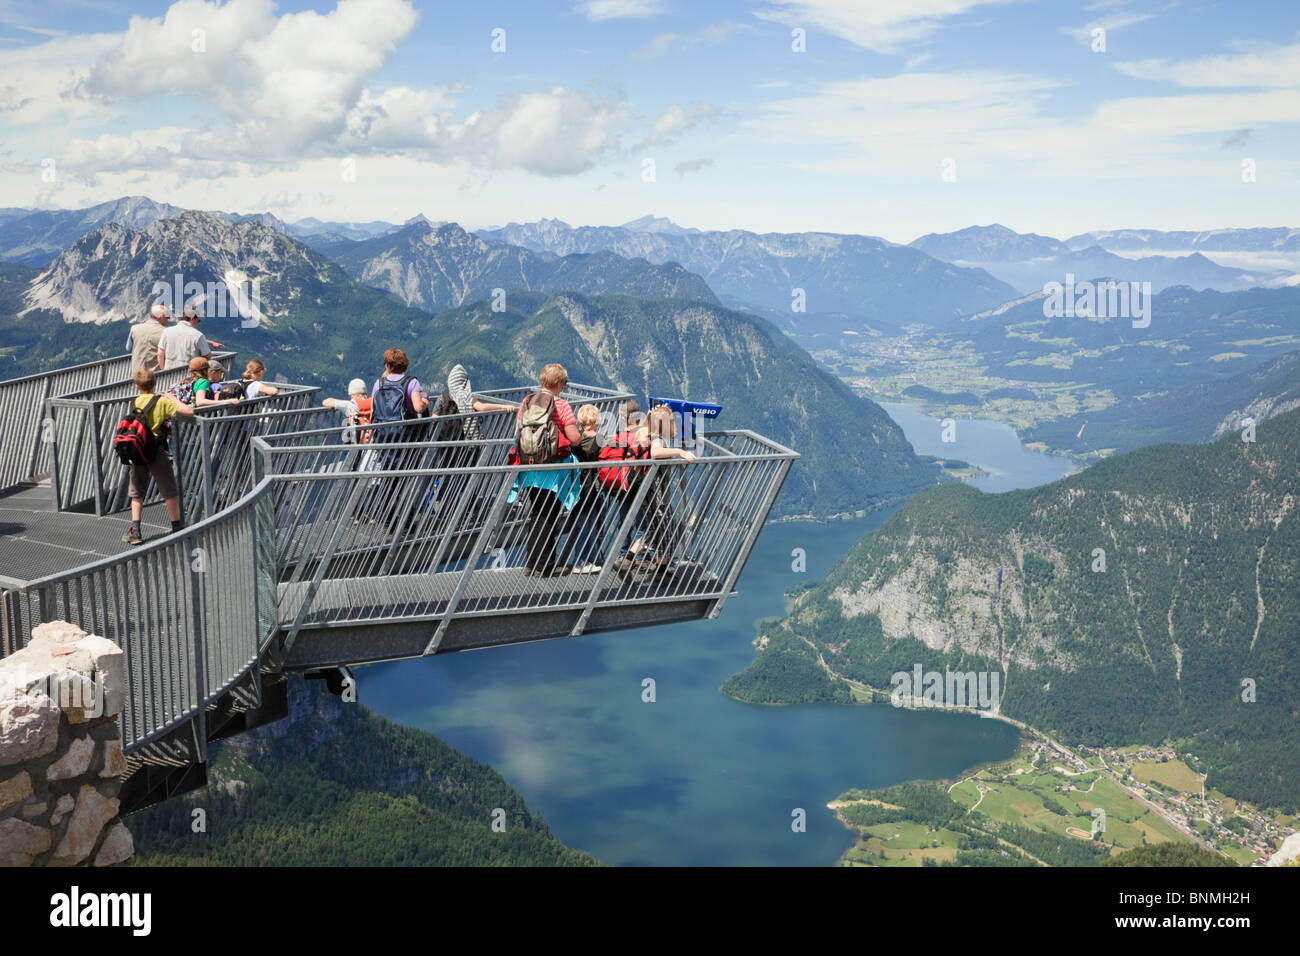 Bambini su 5dita piattaforma di osservazione sul Krippenstein mountain al Dachstein sito Patrimonio Mondiale che si affaccia sul lago Hallstattersee Salzkammergut Austria Foto Stock